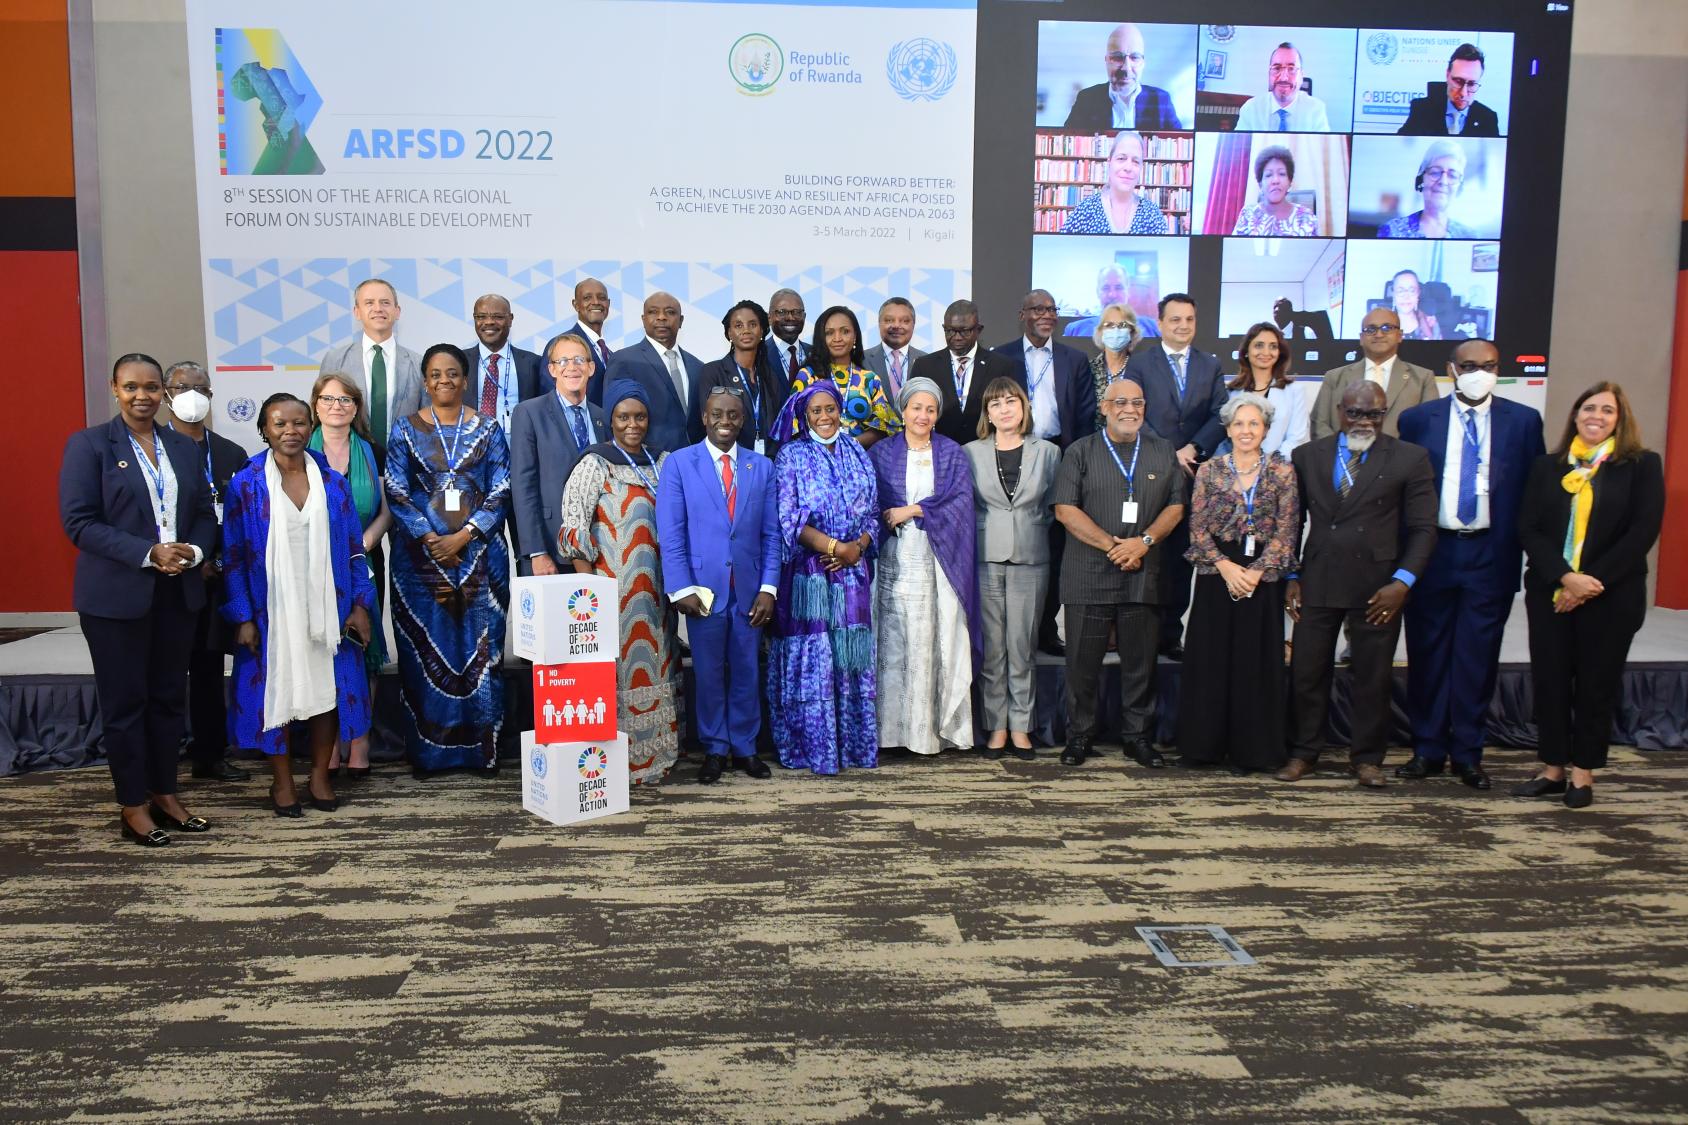 Foto grupal de la Vicesecretaria General junto a los 29 Coordinadores Residentes presentes físicamente en el Centro de Convenciones de Kigali, con una pantalla atrás donde se ve a más asistentes conectados de forma virtual.